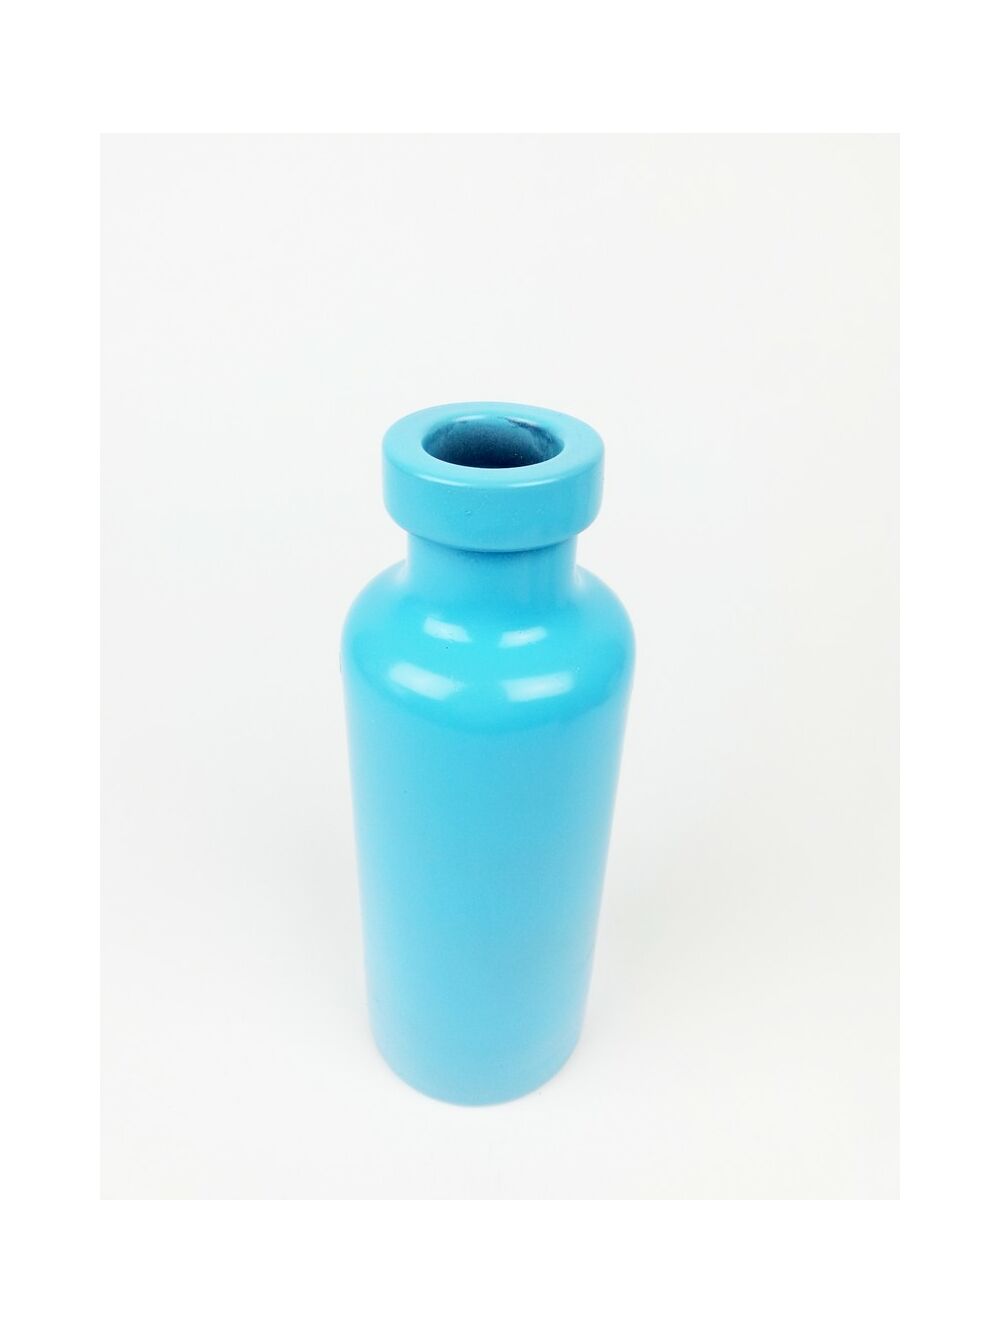 Üveg palack nagy színes - Kék